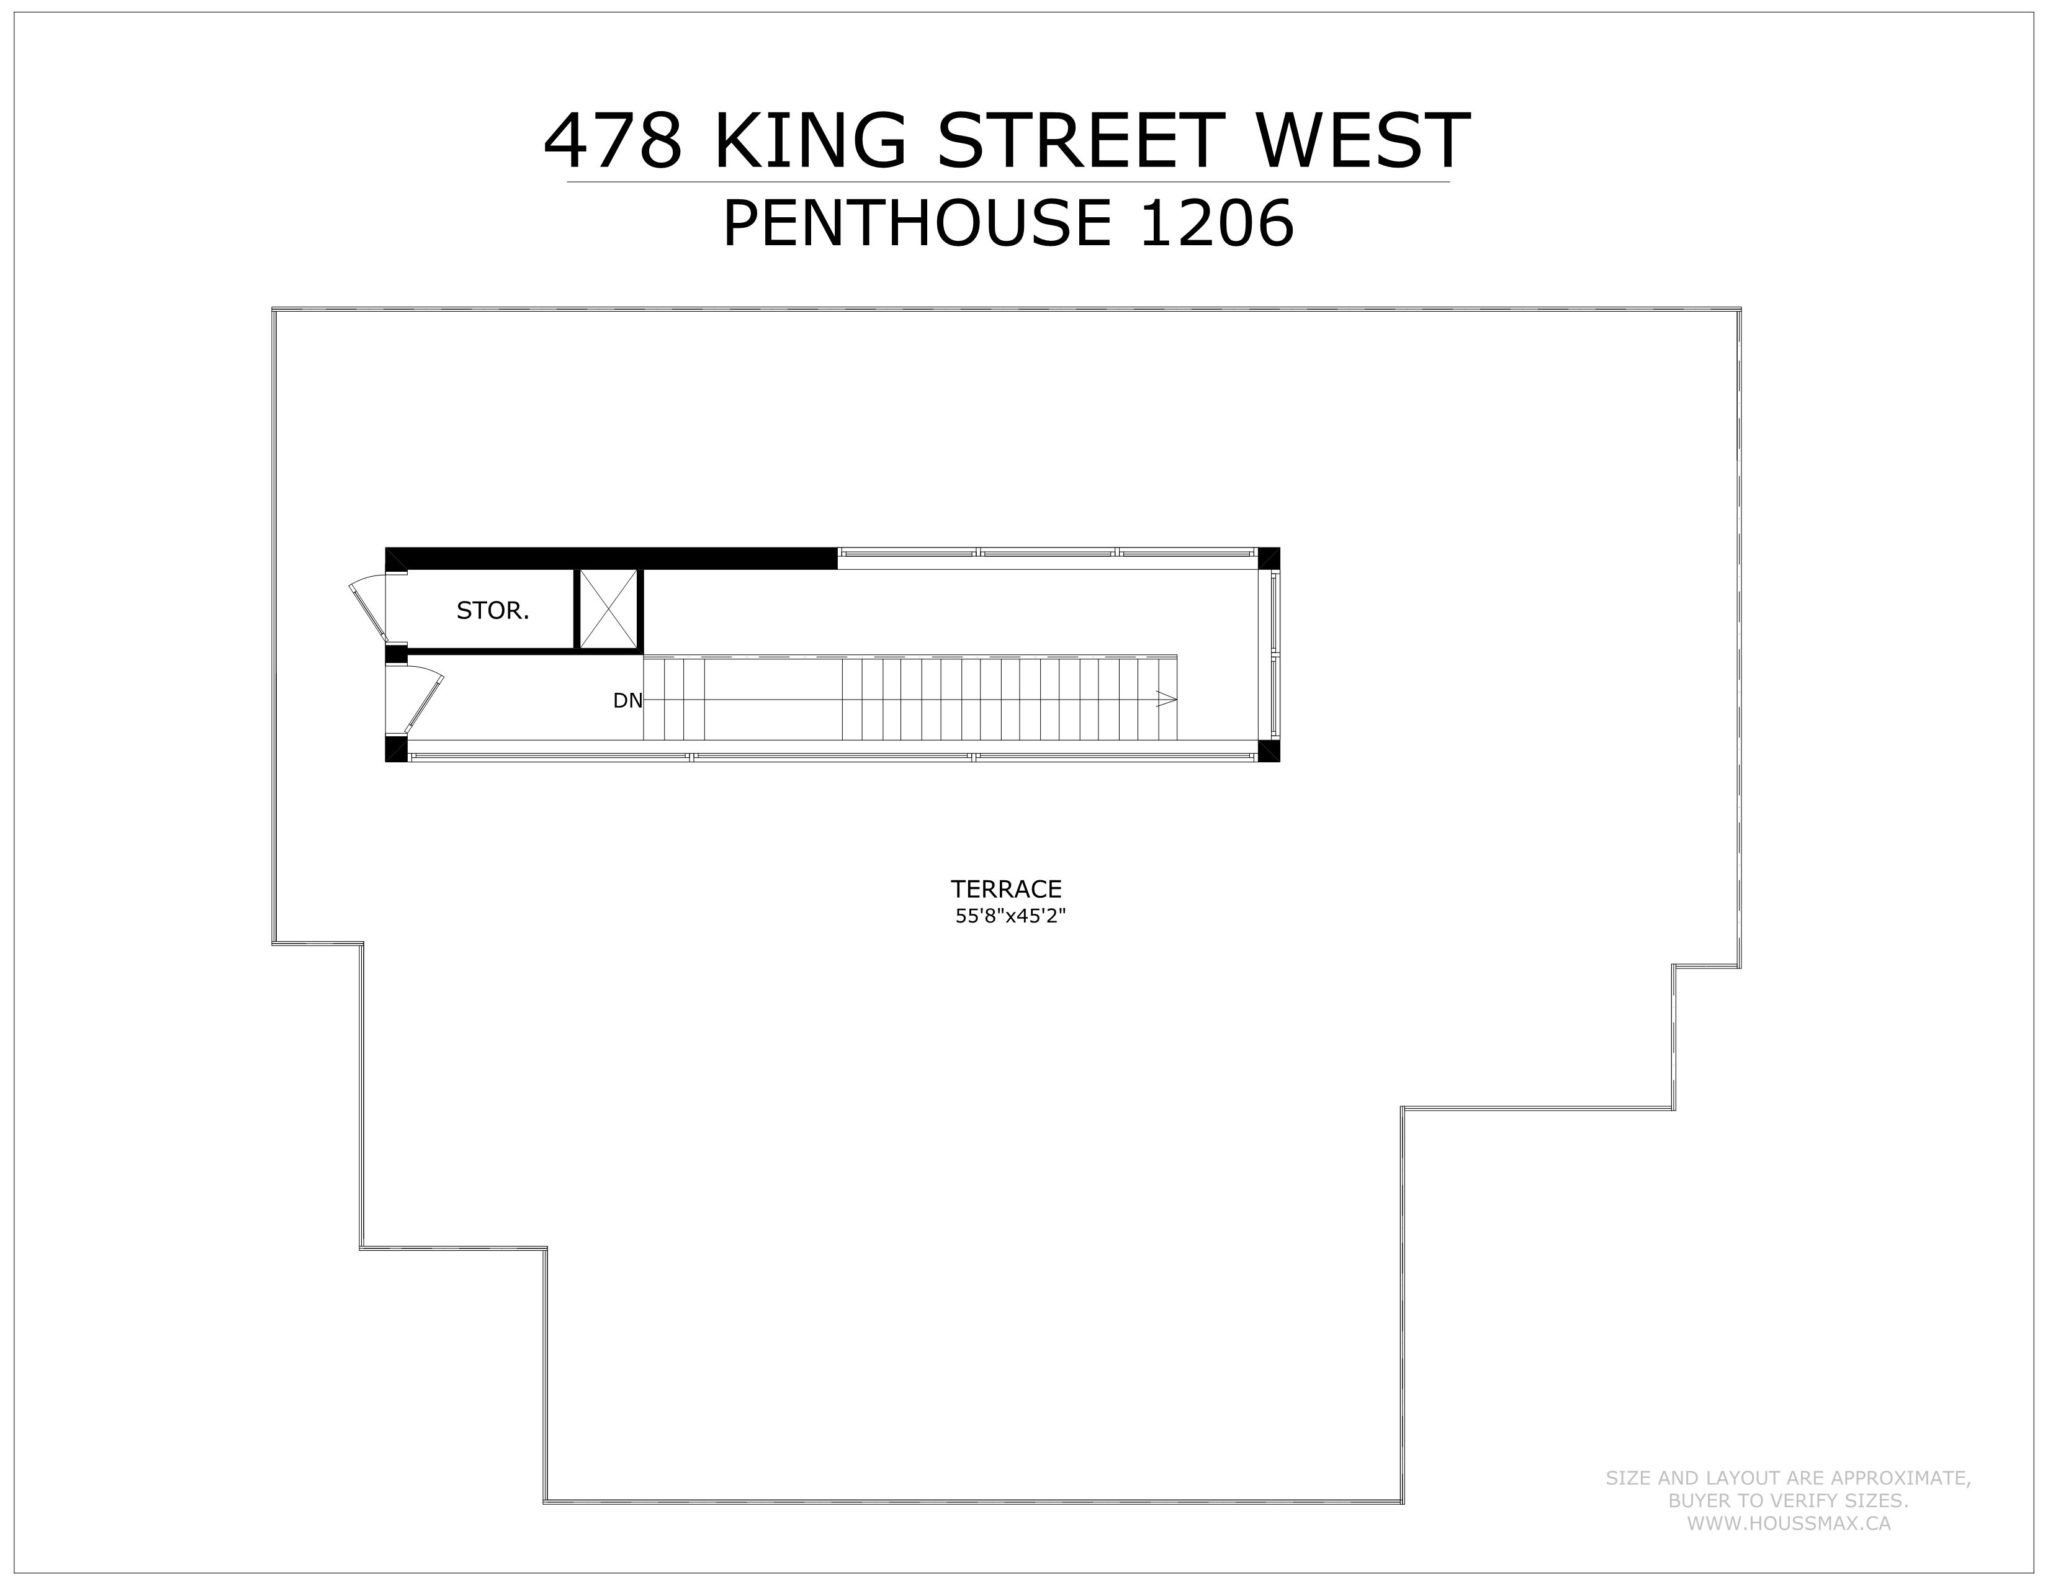 Victory Lofts Penthouse Suite - Floor Plans (Terrace and Deck)